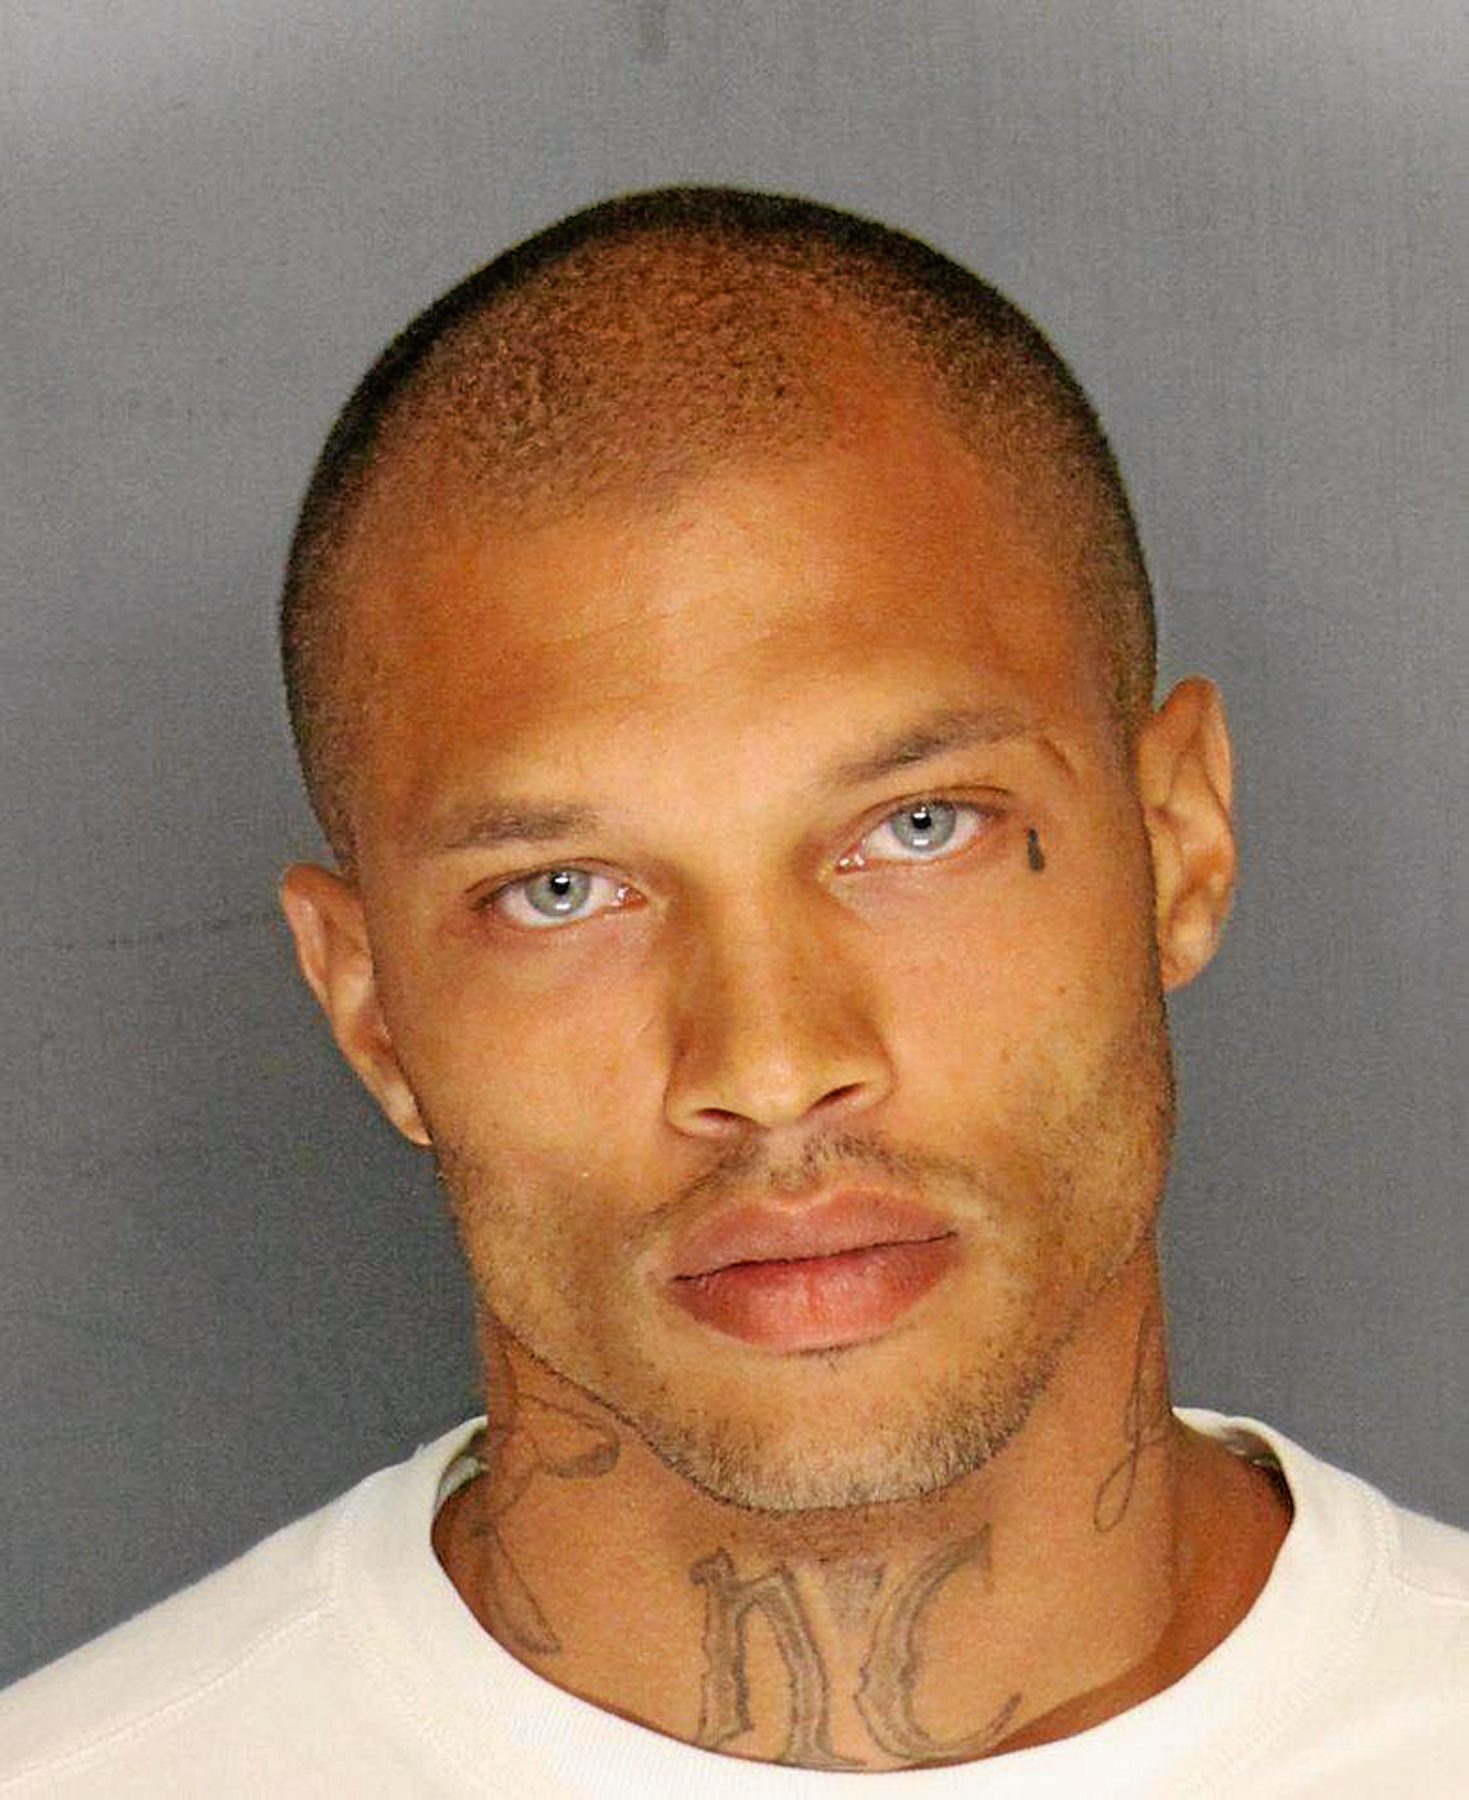 California arrestee’s 'handsome' mug shot goes viral.